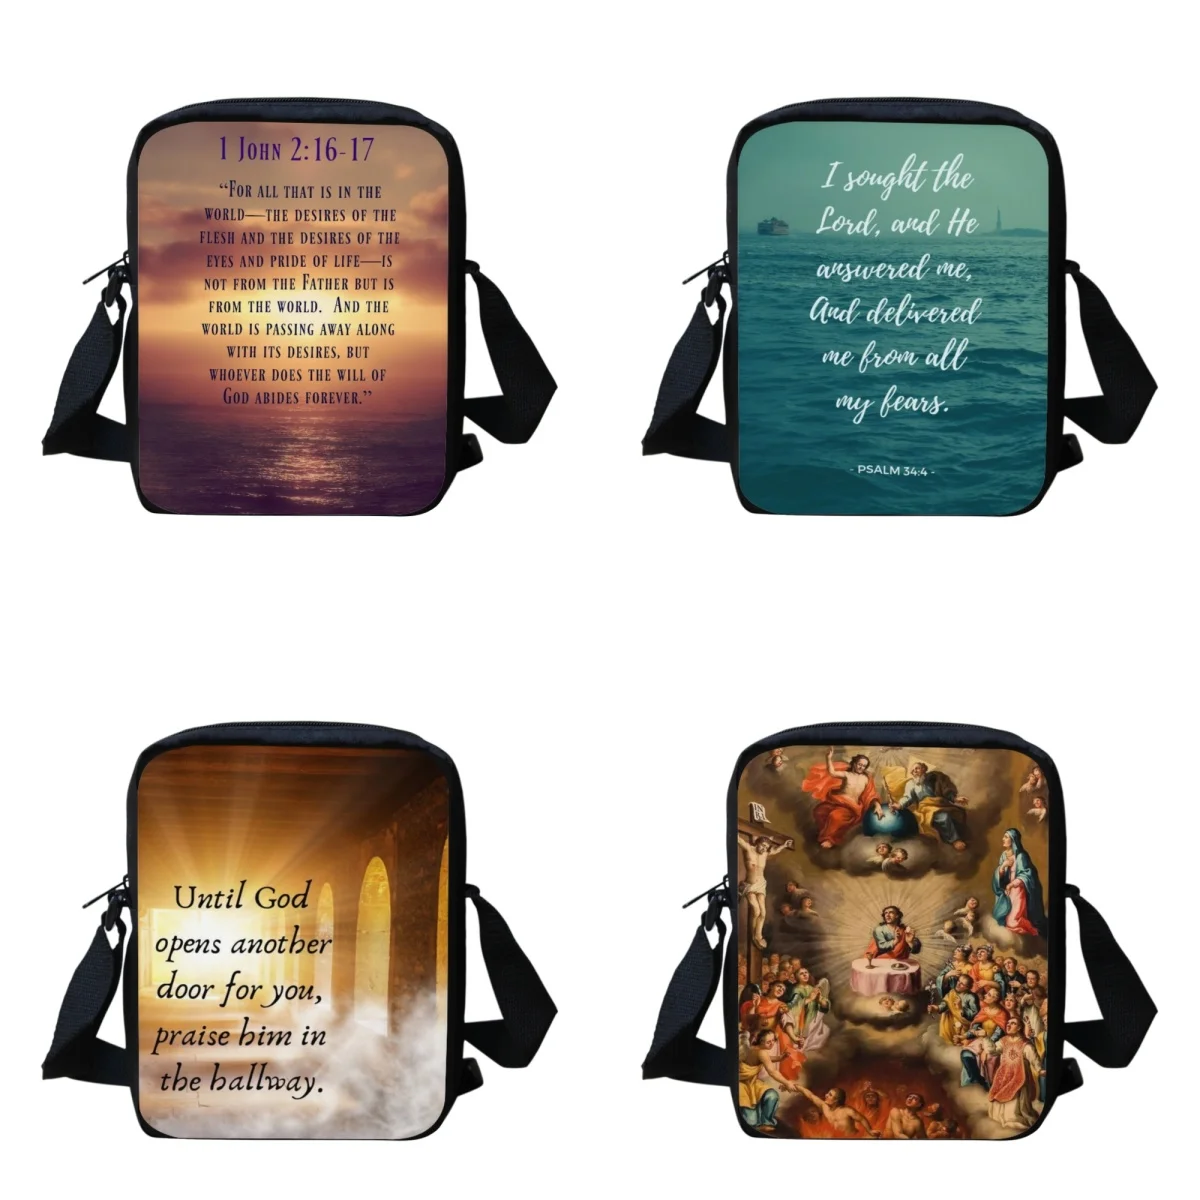 

Женская сумка через плечо BELIDOME с изображением поэзии и Библии, регулируемая сумка-мессенджер через плечо для девушек, портативная Женская мини-сумка через плечо